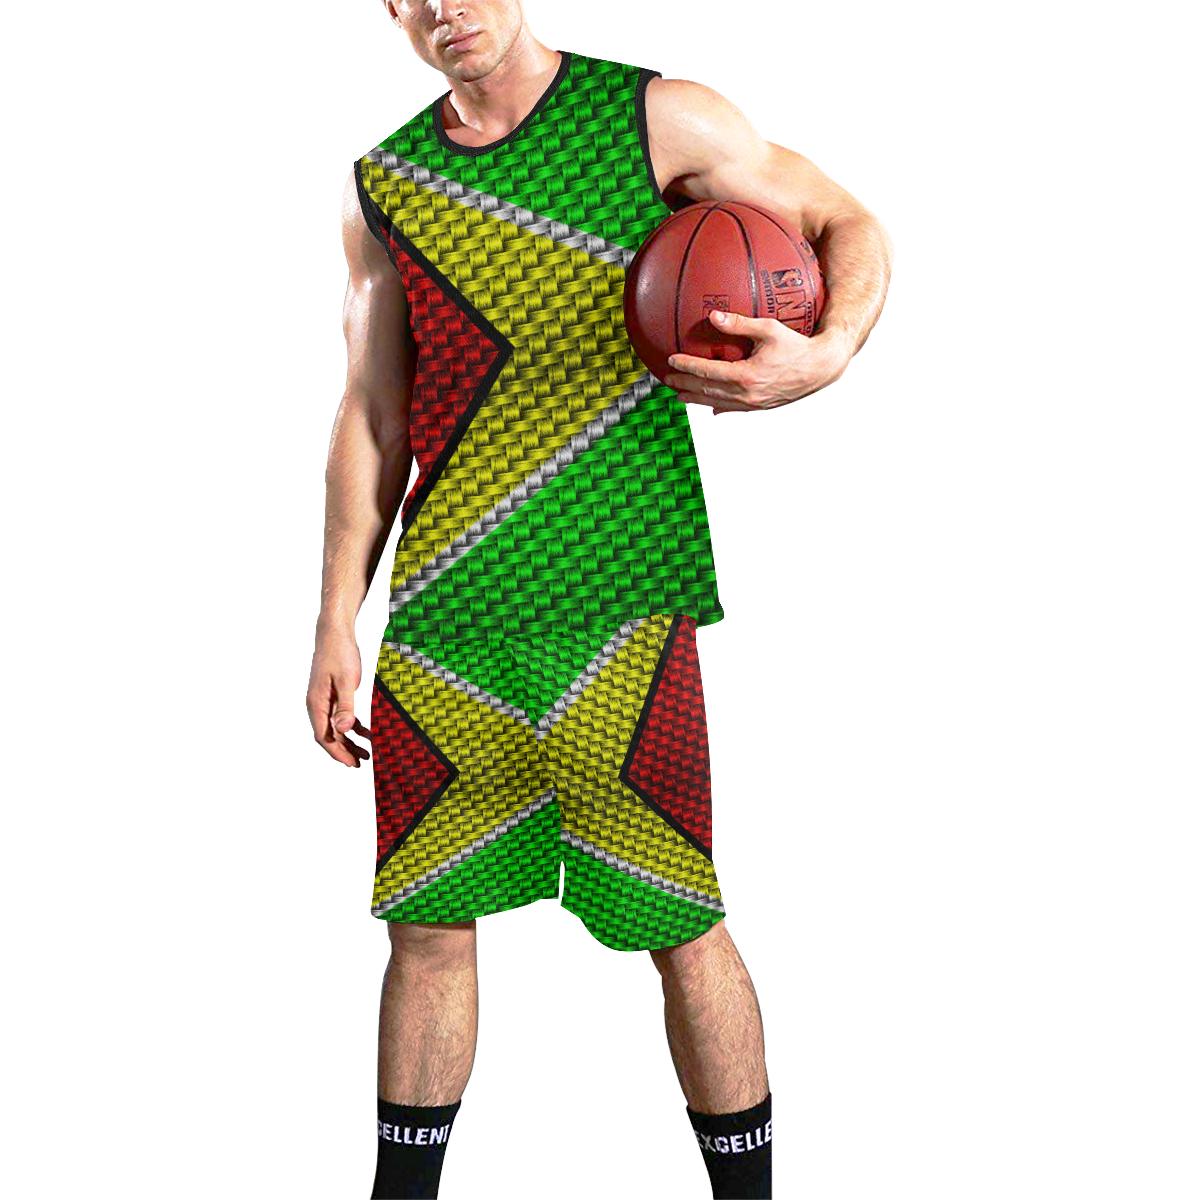 GUYANA All Over Print Basketball Uniform